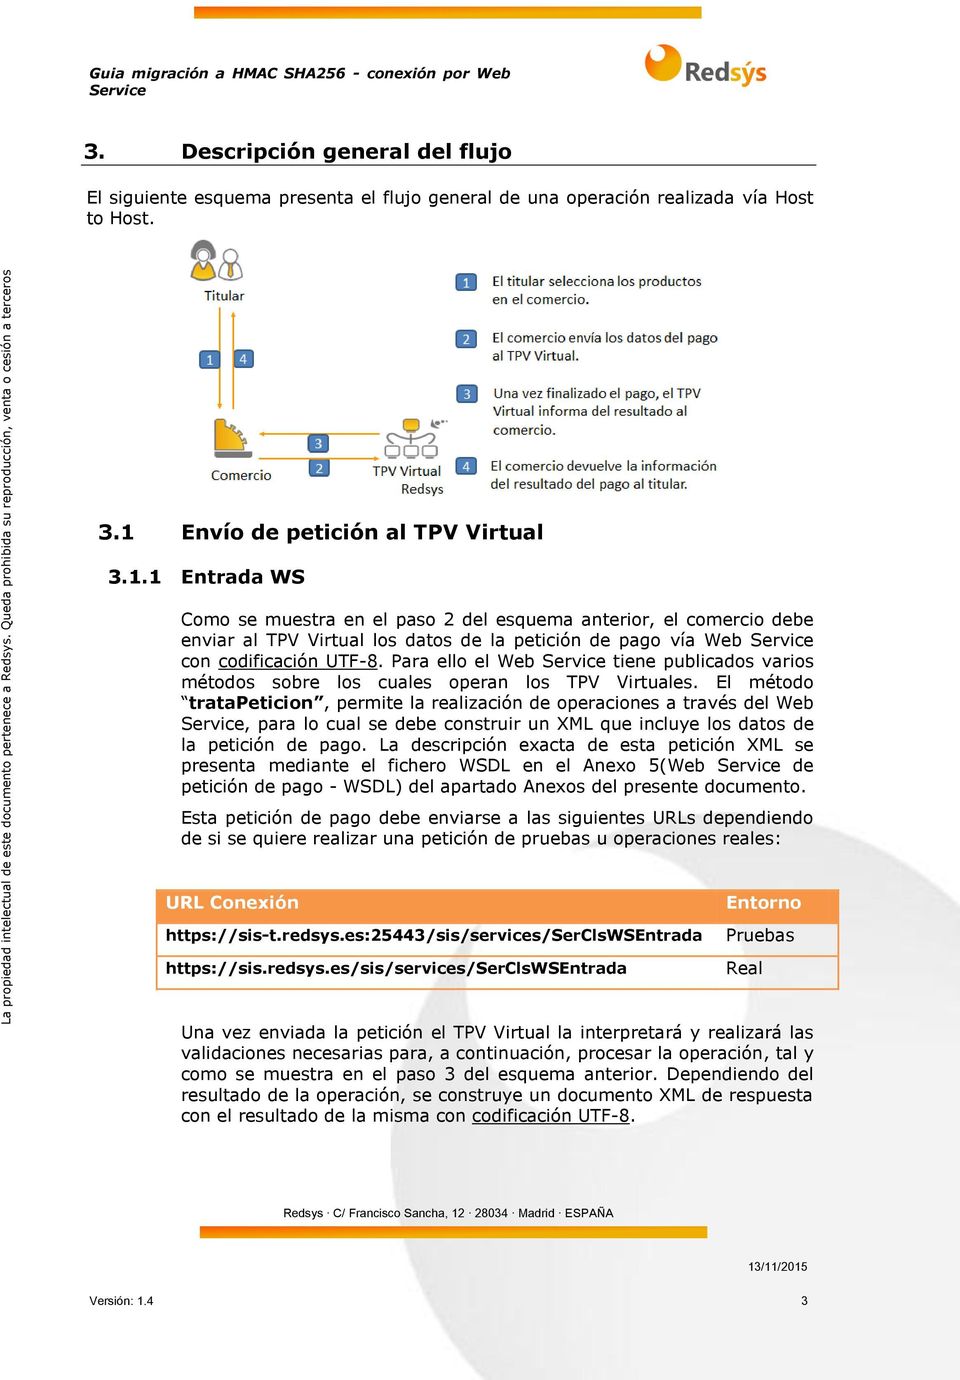 1 Entrada WS Como se muestra en el paso 2 del esquema anterior, el comercio debe enviar al TPV Virtual los datos de la petición de pago vía Web con codificación UTF-8.